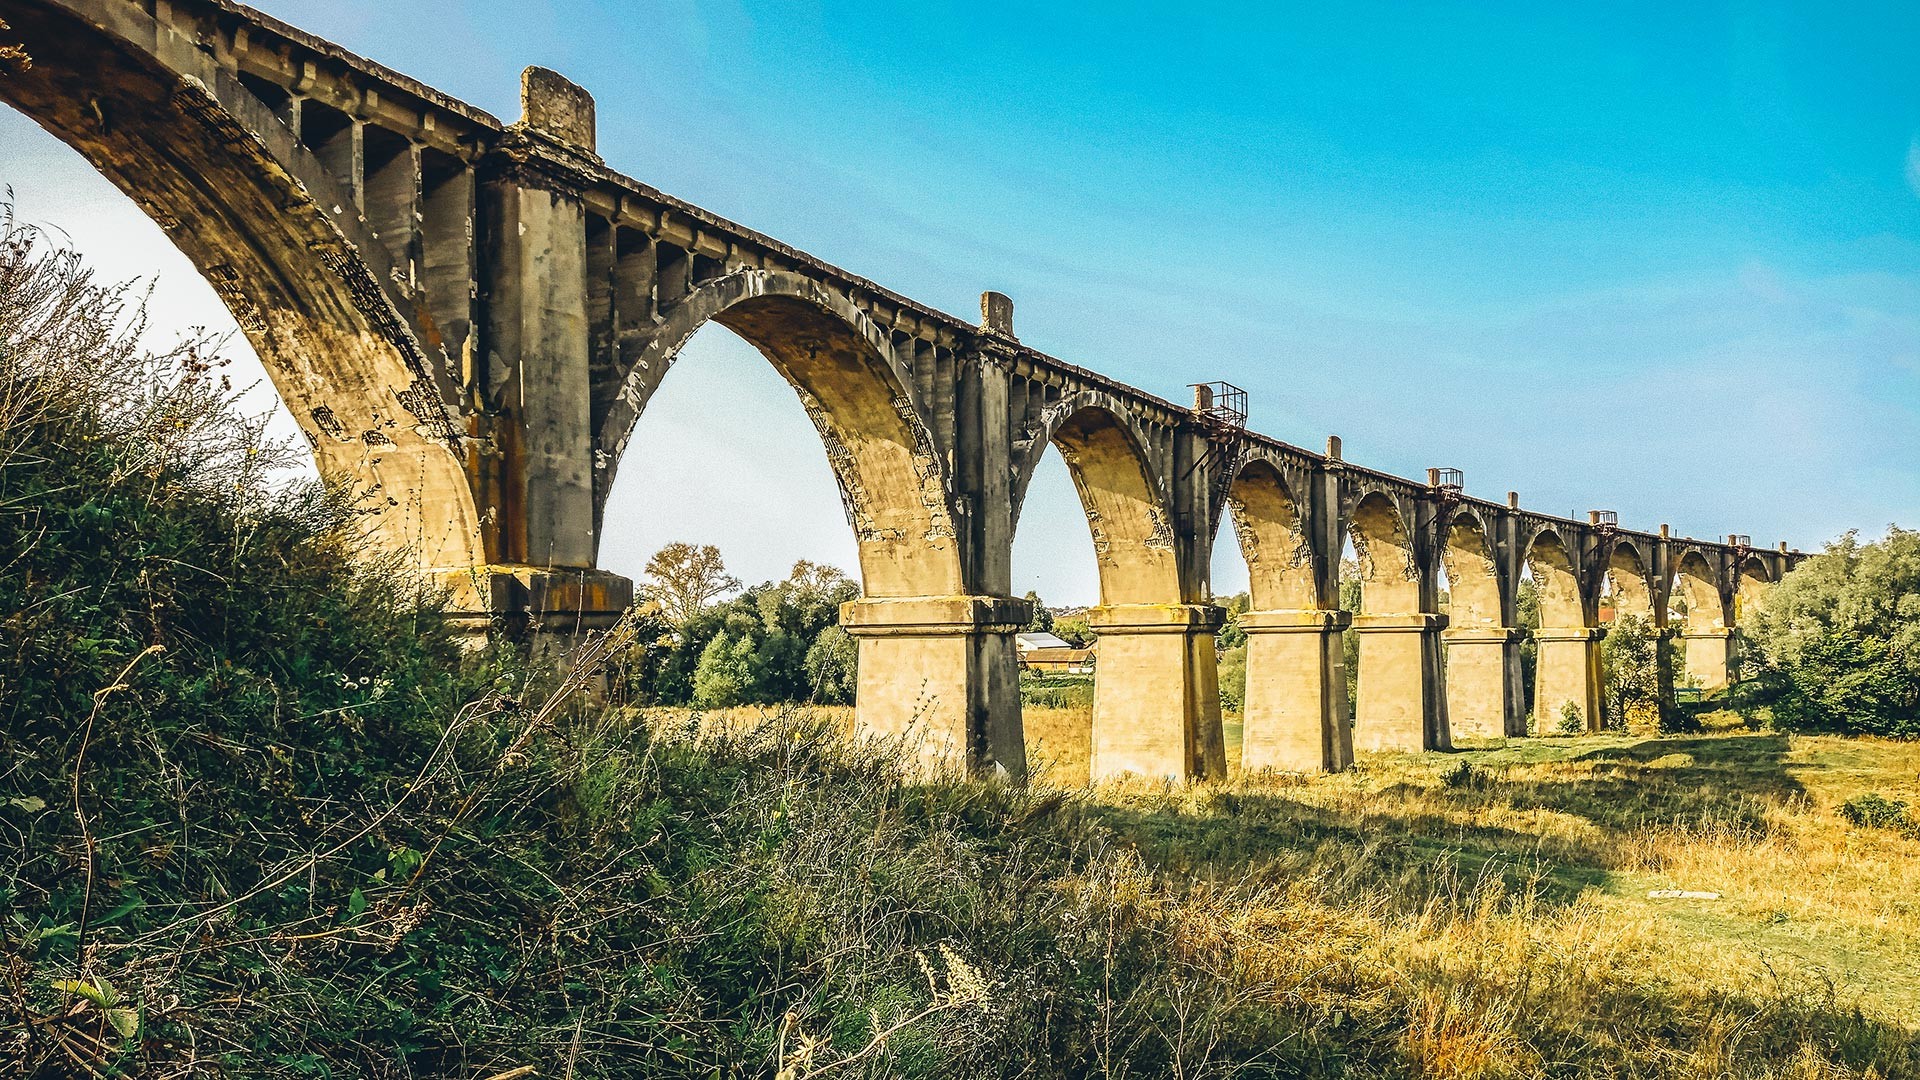 Мокринский железнодорожный мост - исторический железобетонный арочный виадук, построенный через реку Ута. Расположен в деревне Мокры Канашского района Чувашской Республики